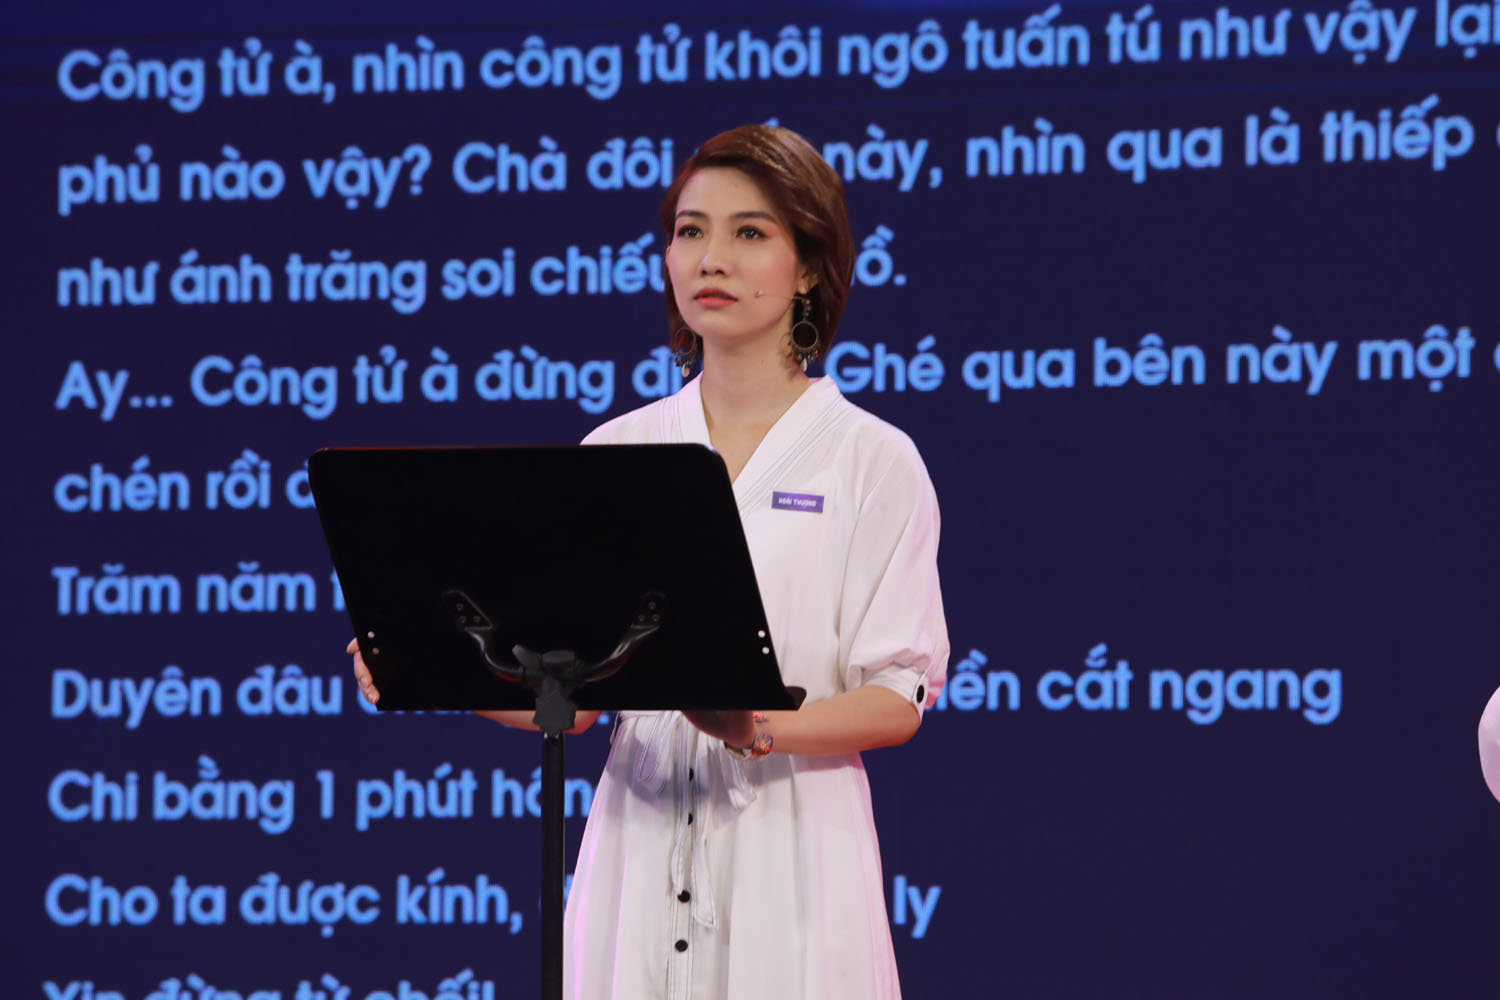 DVLT HOAI THUONG 1 Thanh Âm Quyền Năng – chương trình truyền hình hiếm hoi khai thác nghề lồng tiếng ở Việt Nam